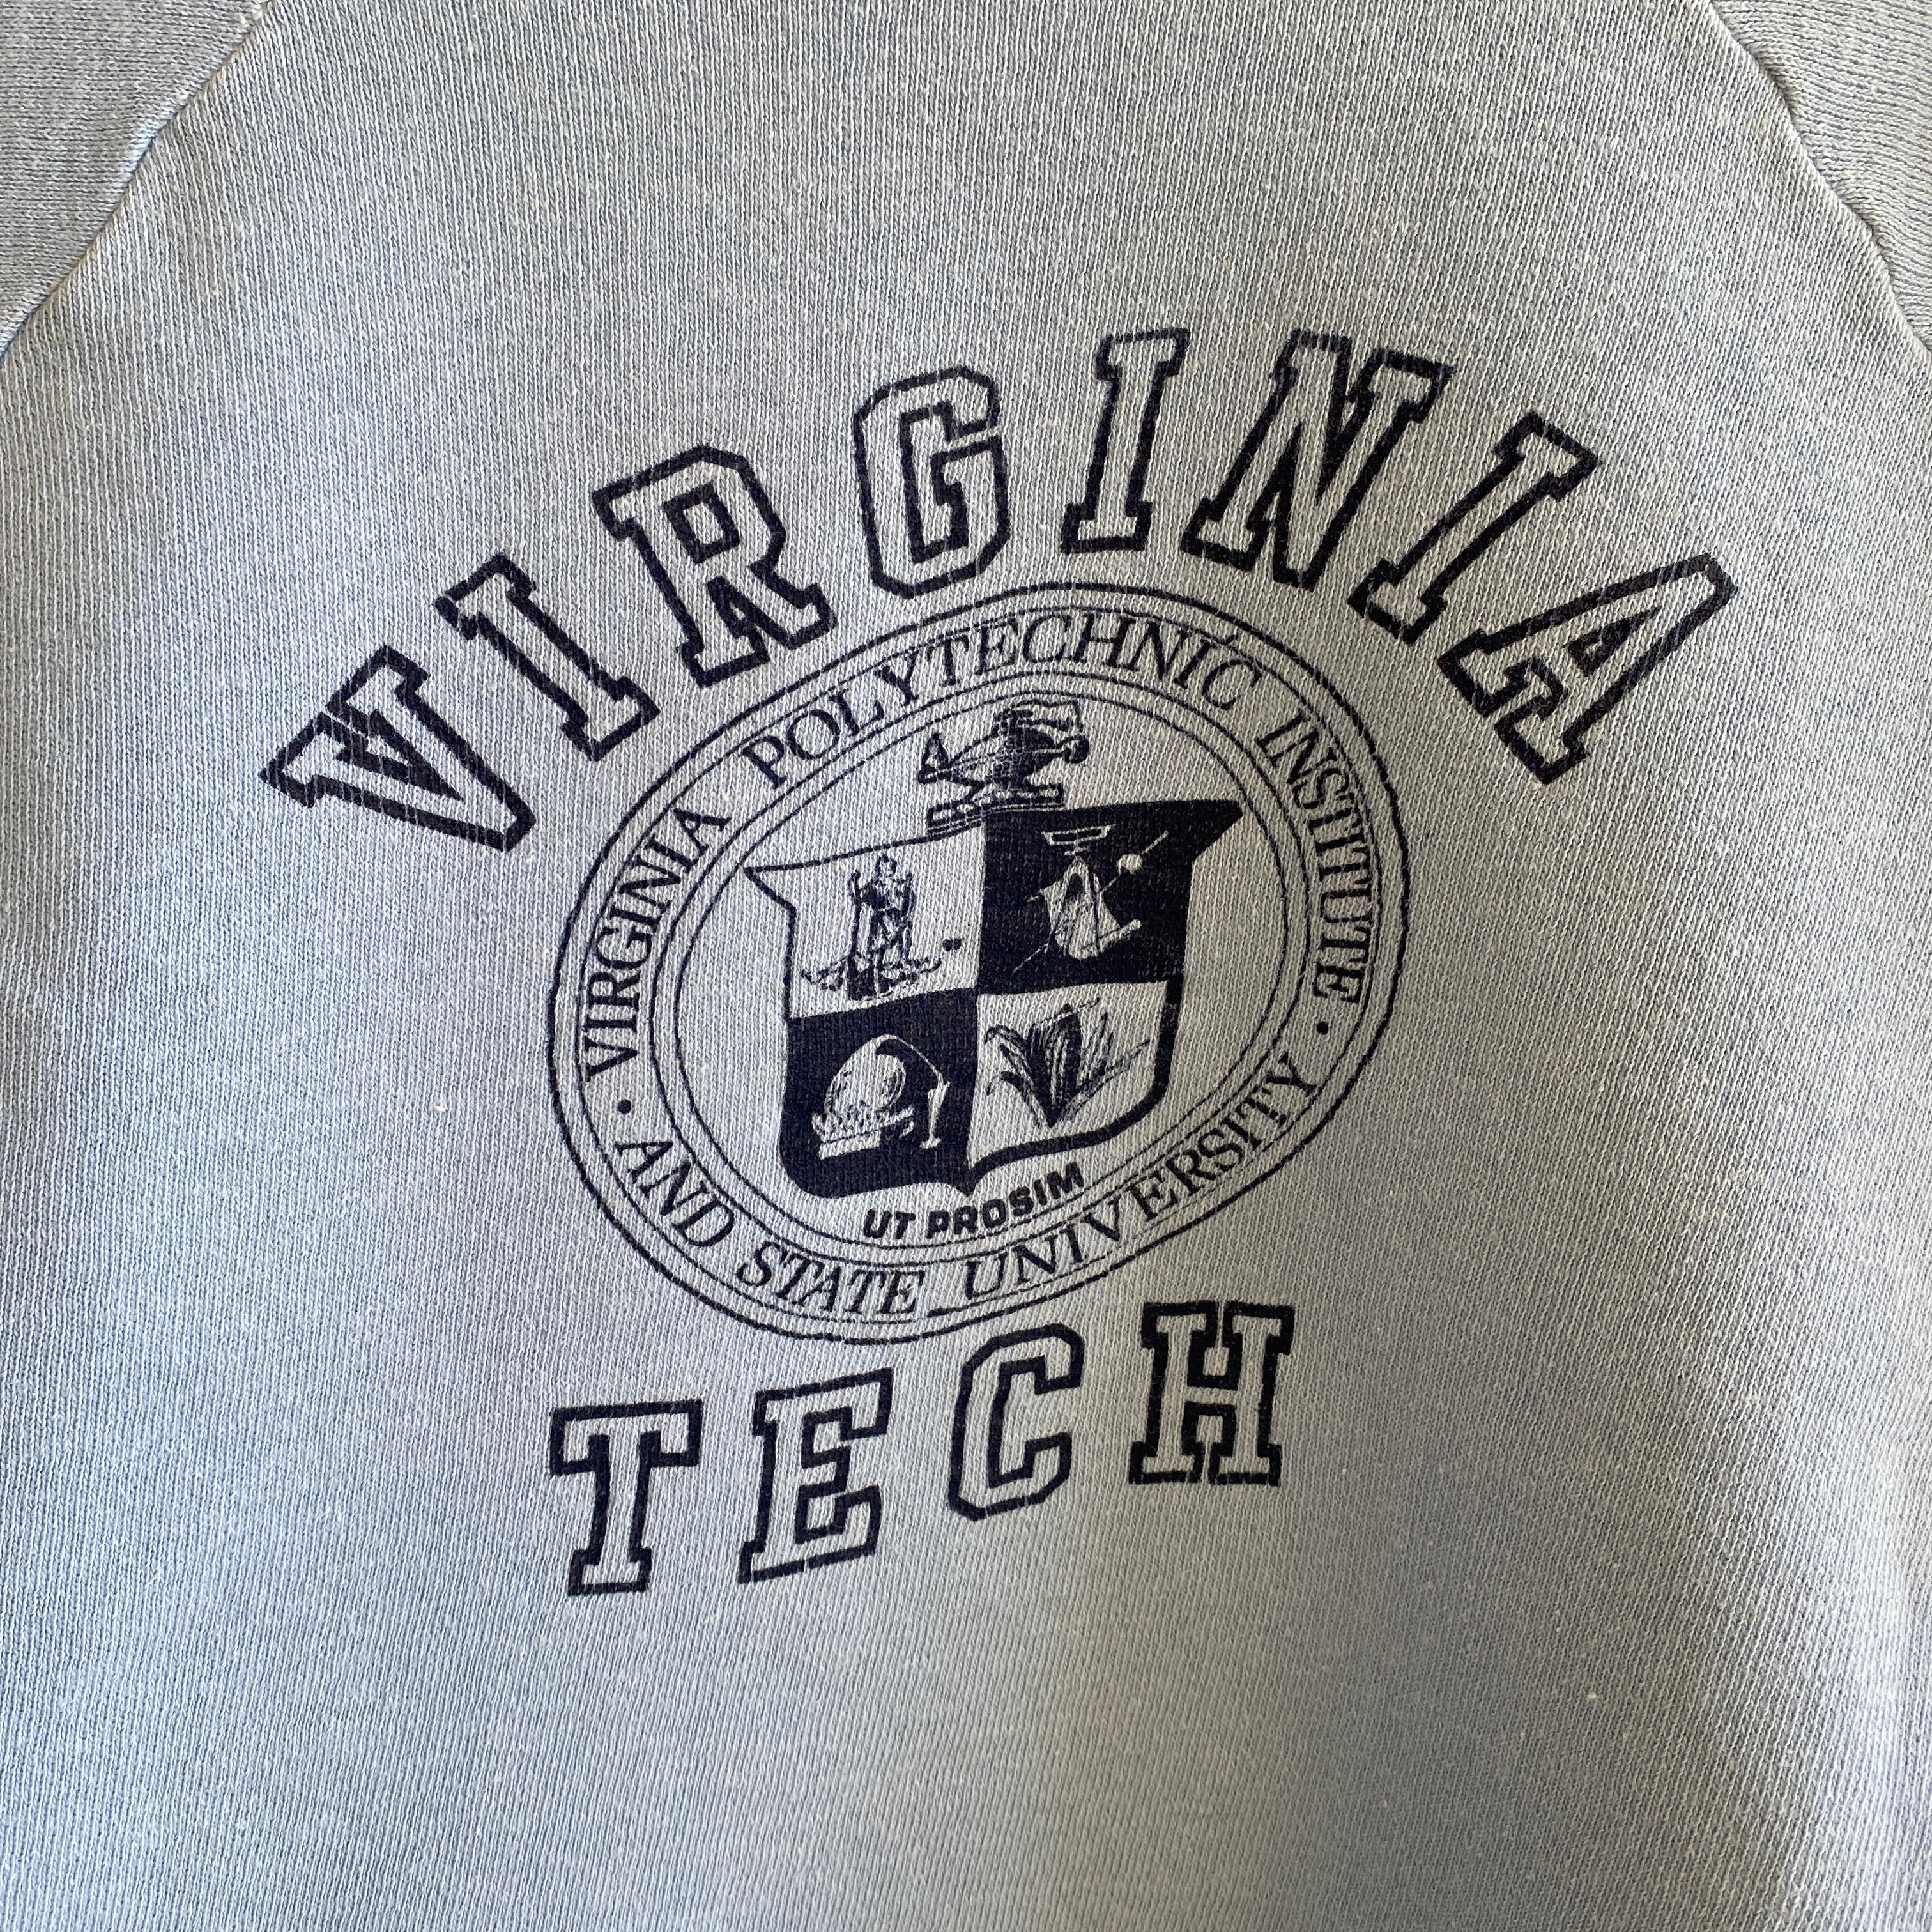 Sweat-shirt universitaire Virginia Tech des années 1960/70